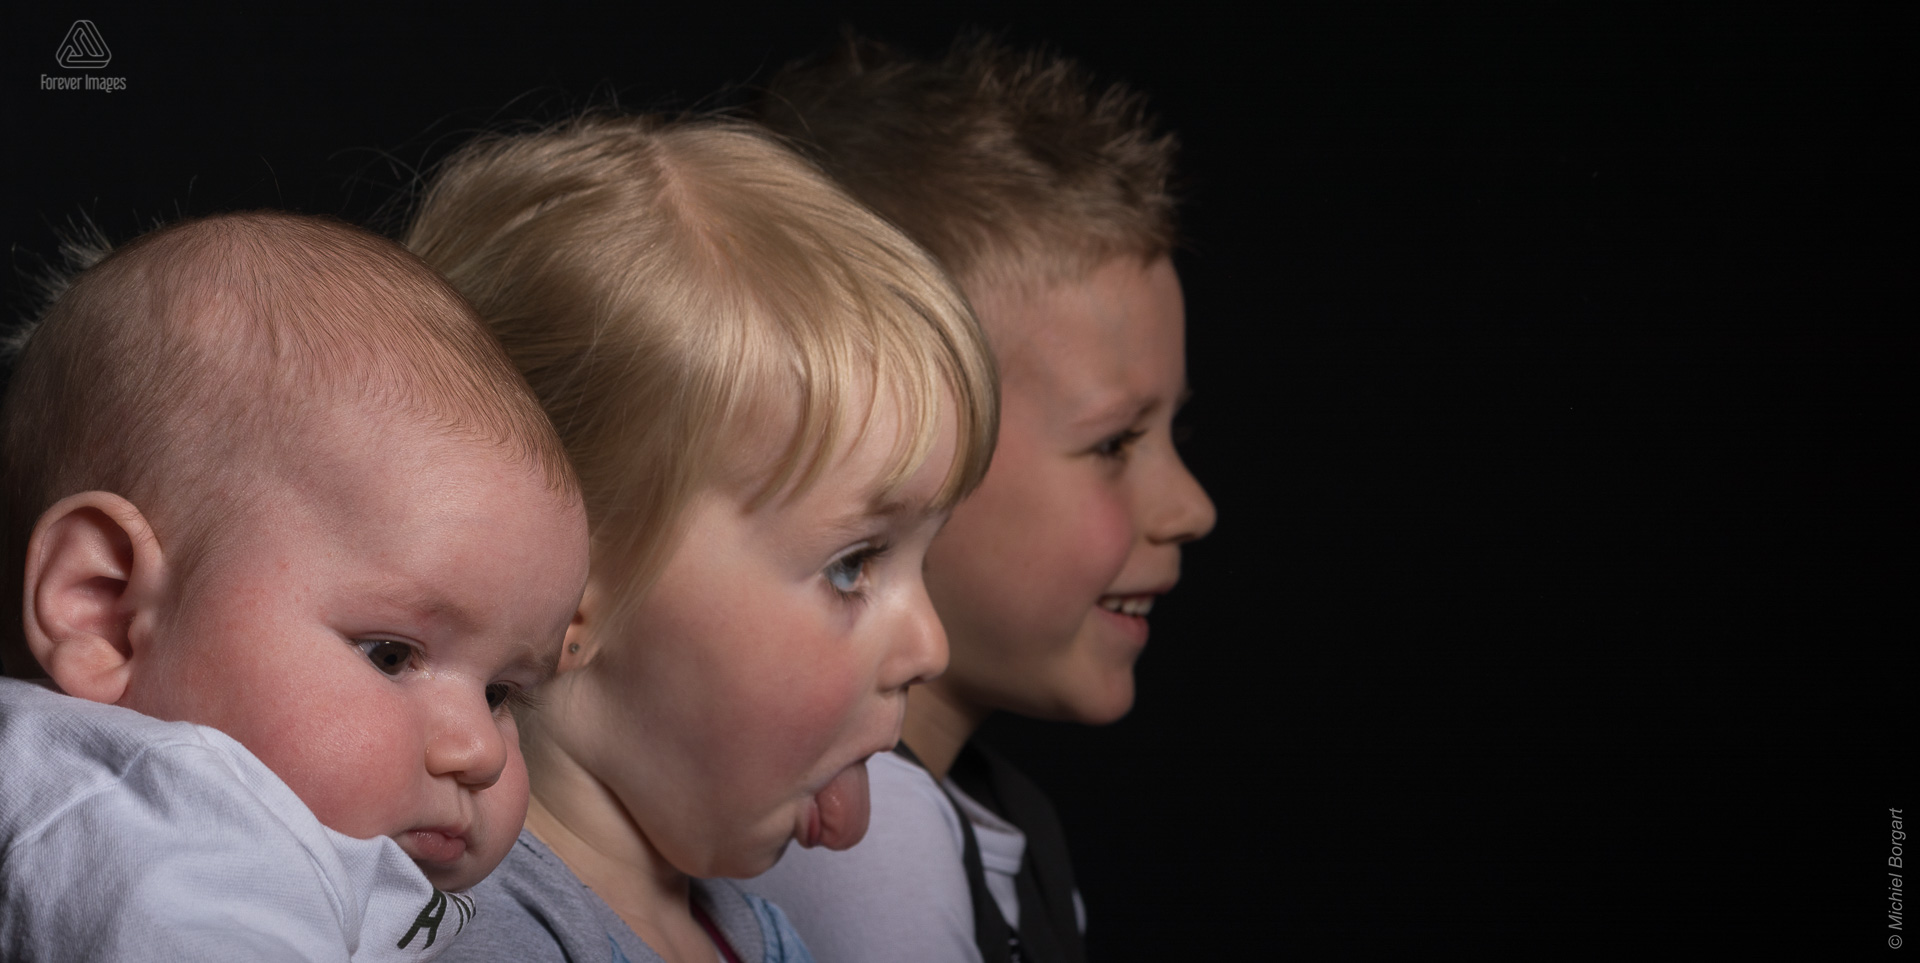 Kinderfoto broertjes en zusje waarbij het meisje haar tong uitsteekt | Noah Kayleigh-Sophie Elias | Portretfotograaf Michiel Borgart - Forever Images.